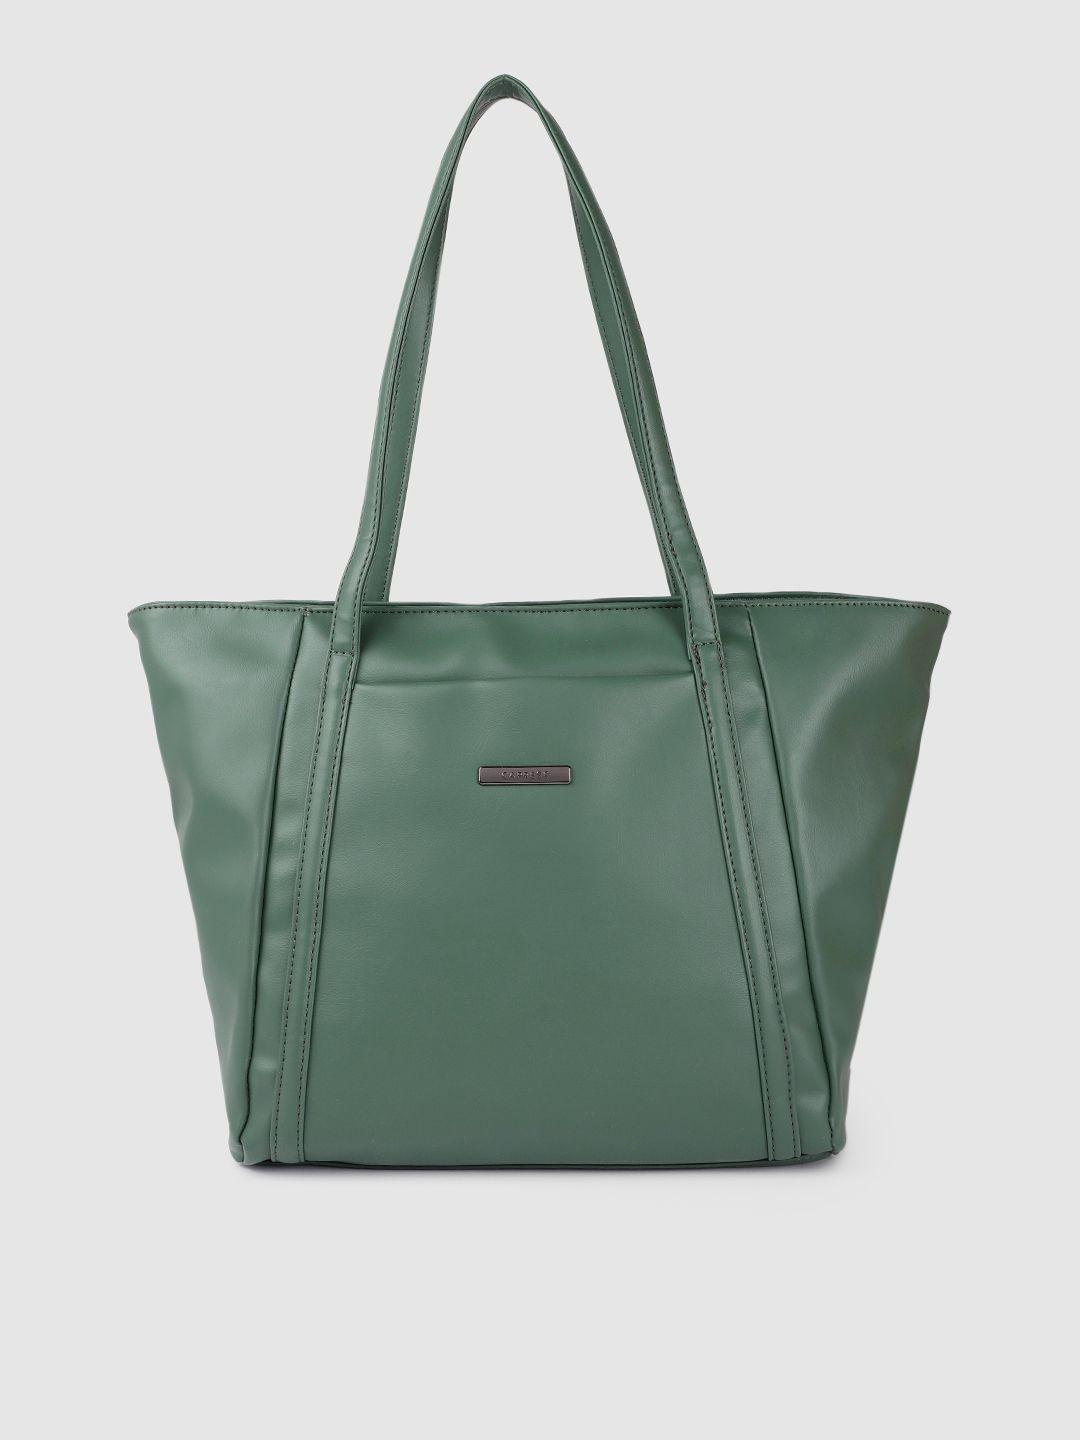 caprese-teal-green-solid-structured-shoulder-bag